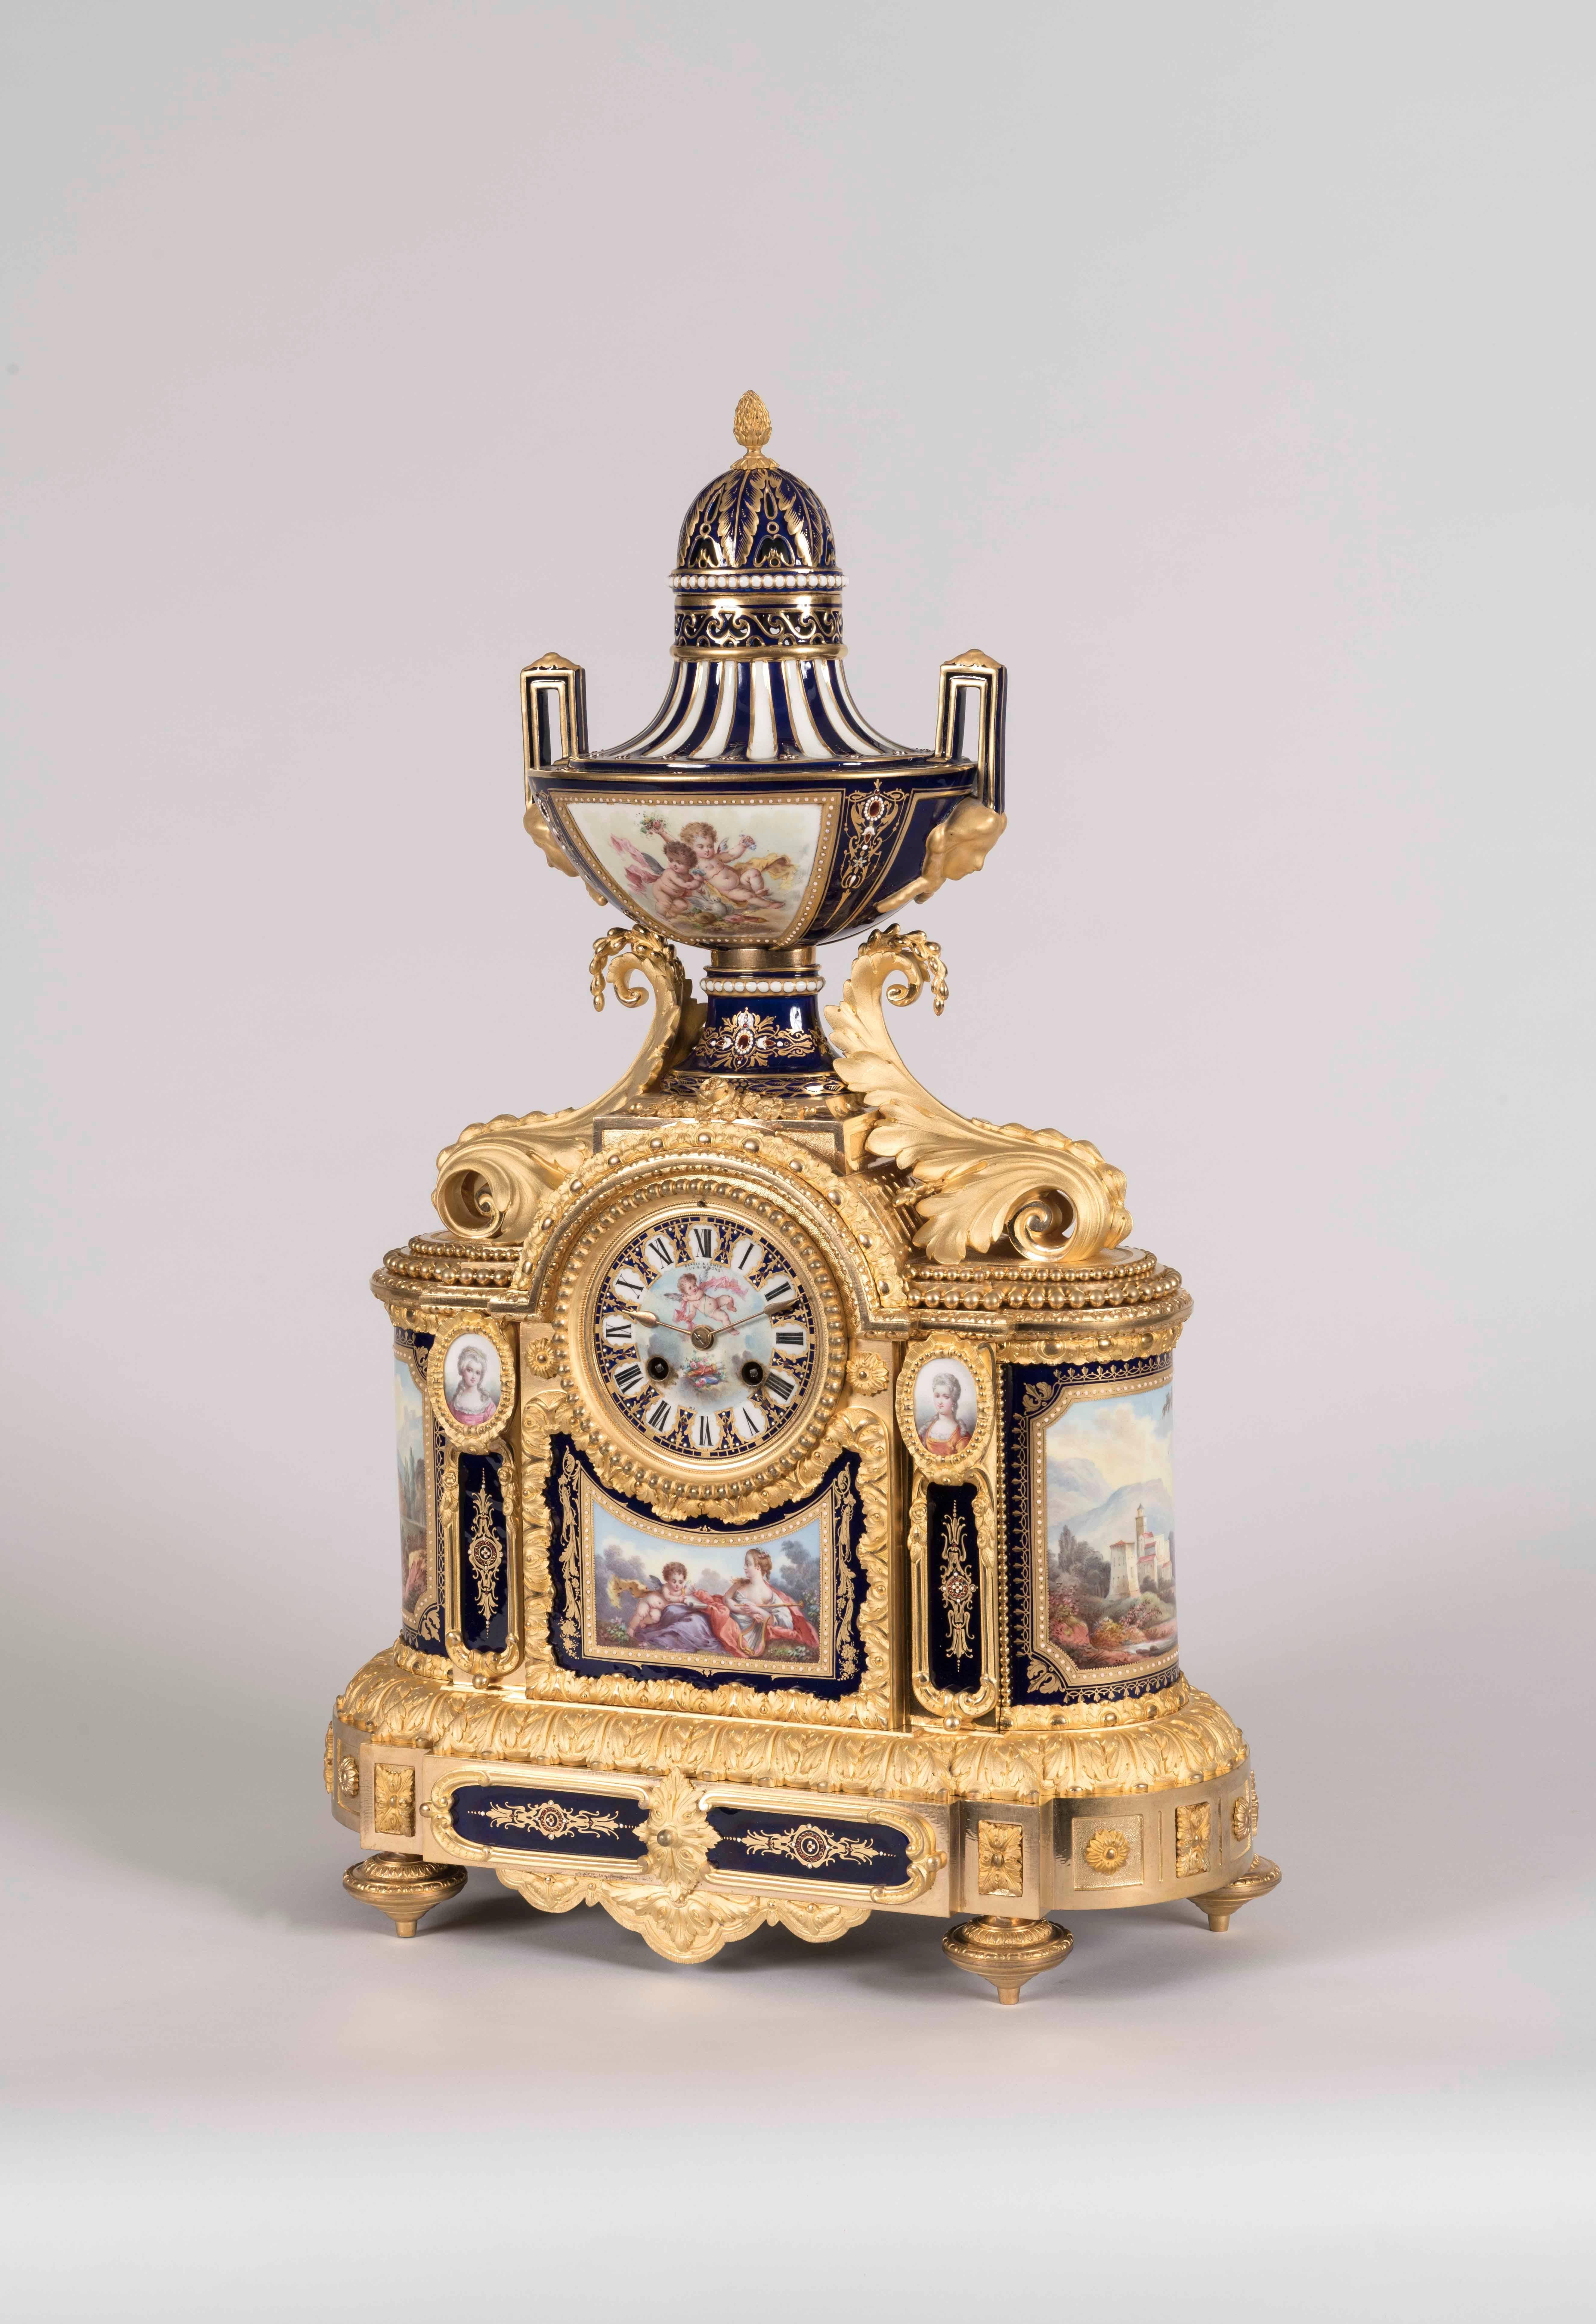 Eine Garniture de Chemineé nach dem Geschmack von Louis XVI
Von Arnold & Lewis (später Simmons)

Die Manteluhr und die beiden dazugehörigen Vasen sind aus juwelenbesetztem Porzellan im Sèvres-Stil gefertigt, von Hand und polychrom verziert, mit